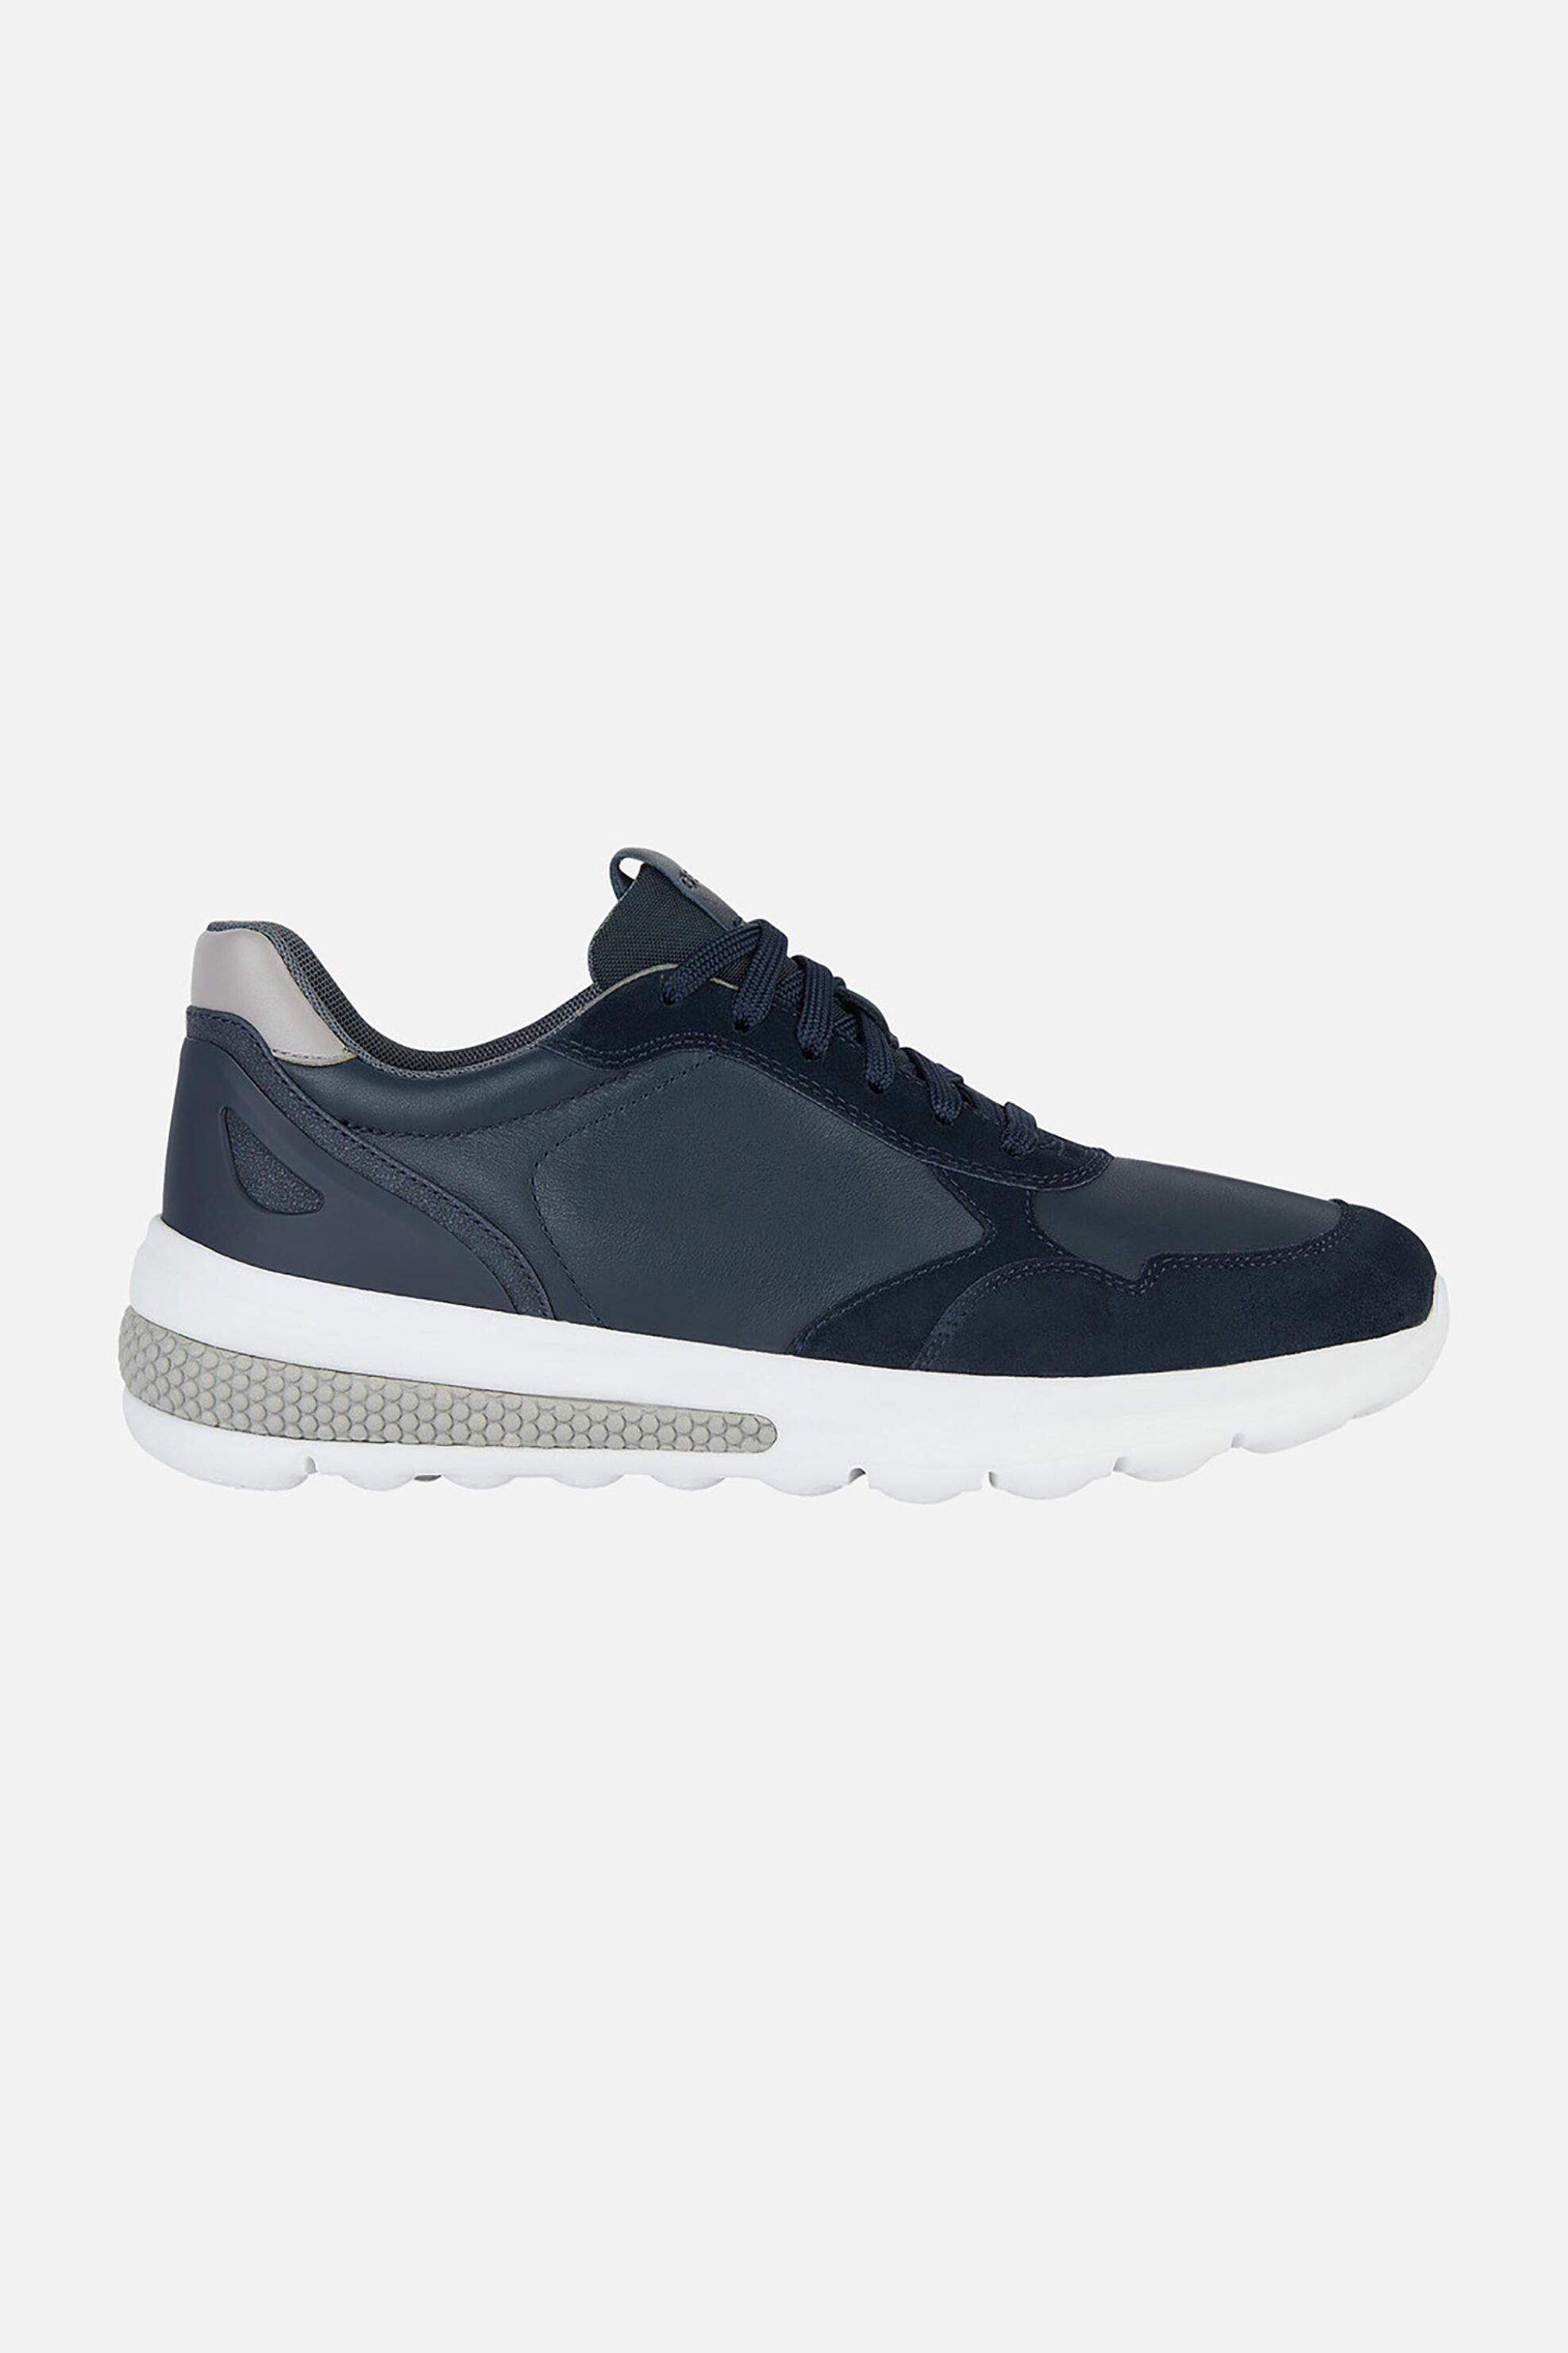 Ανδρική Μόδα > Ανδρικά Παπούτσια > Ανδρικά Sneakers Geox ανδρικά sneakers "Spherica Actif" - U45BAA08522C4002 Μπλε Σκούρο